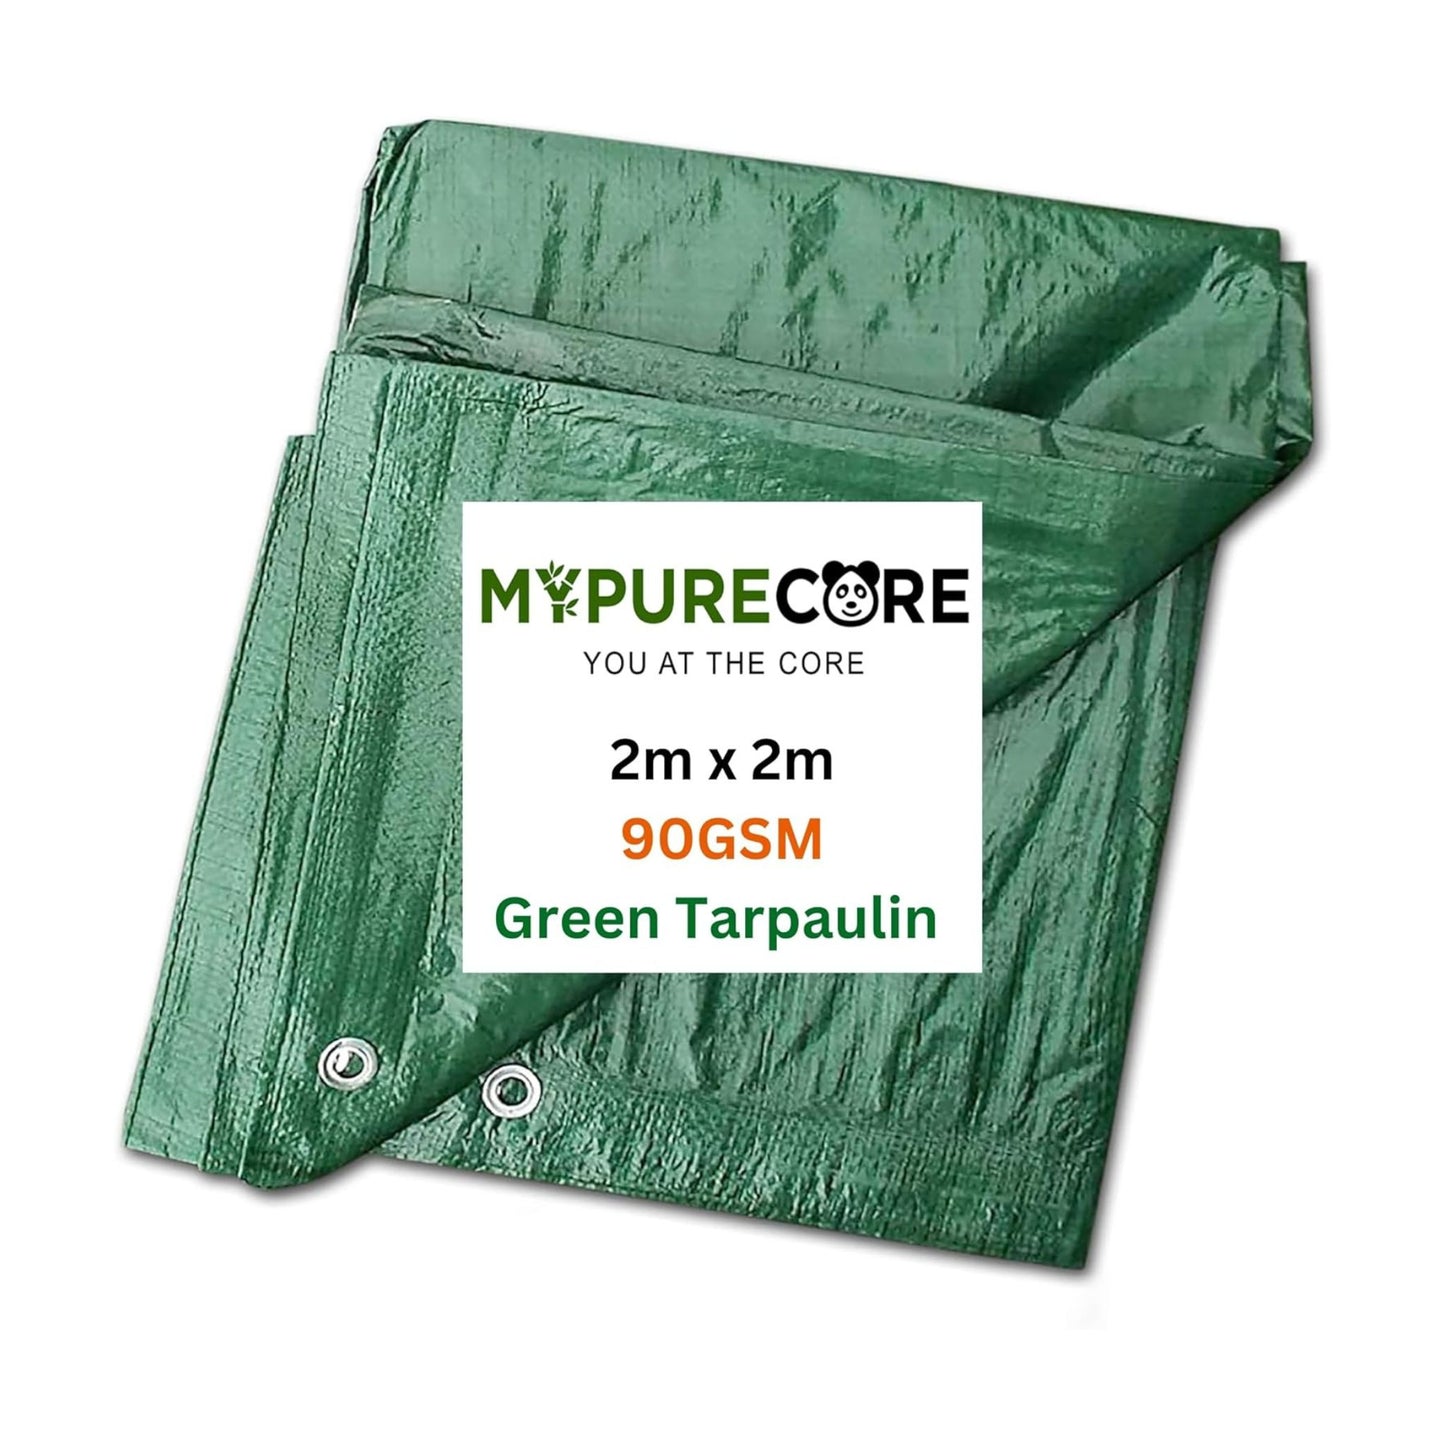 Green Tarpaulin – Heavy Duty, Waterproof Cover